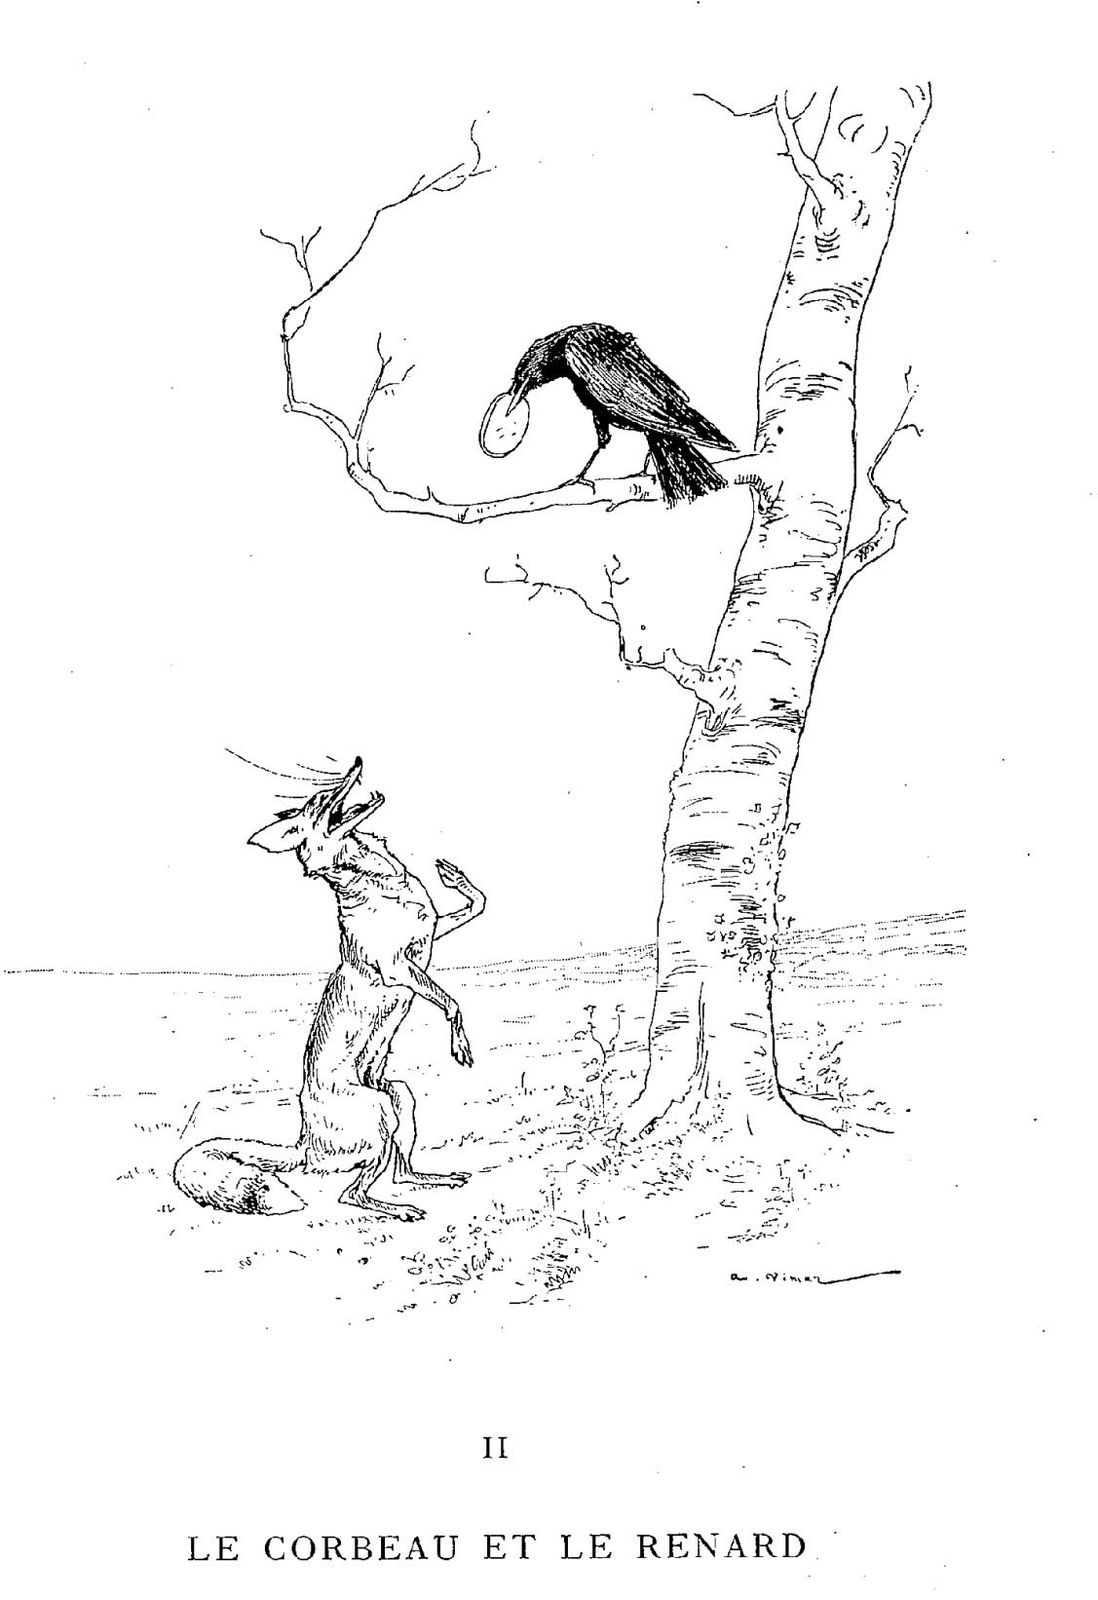 Illustration dessin Vimar fable de La Fontaine le corbeau et le renard